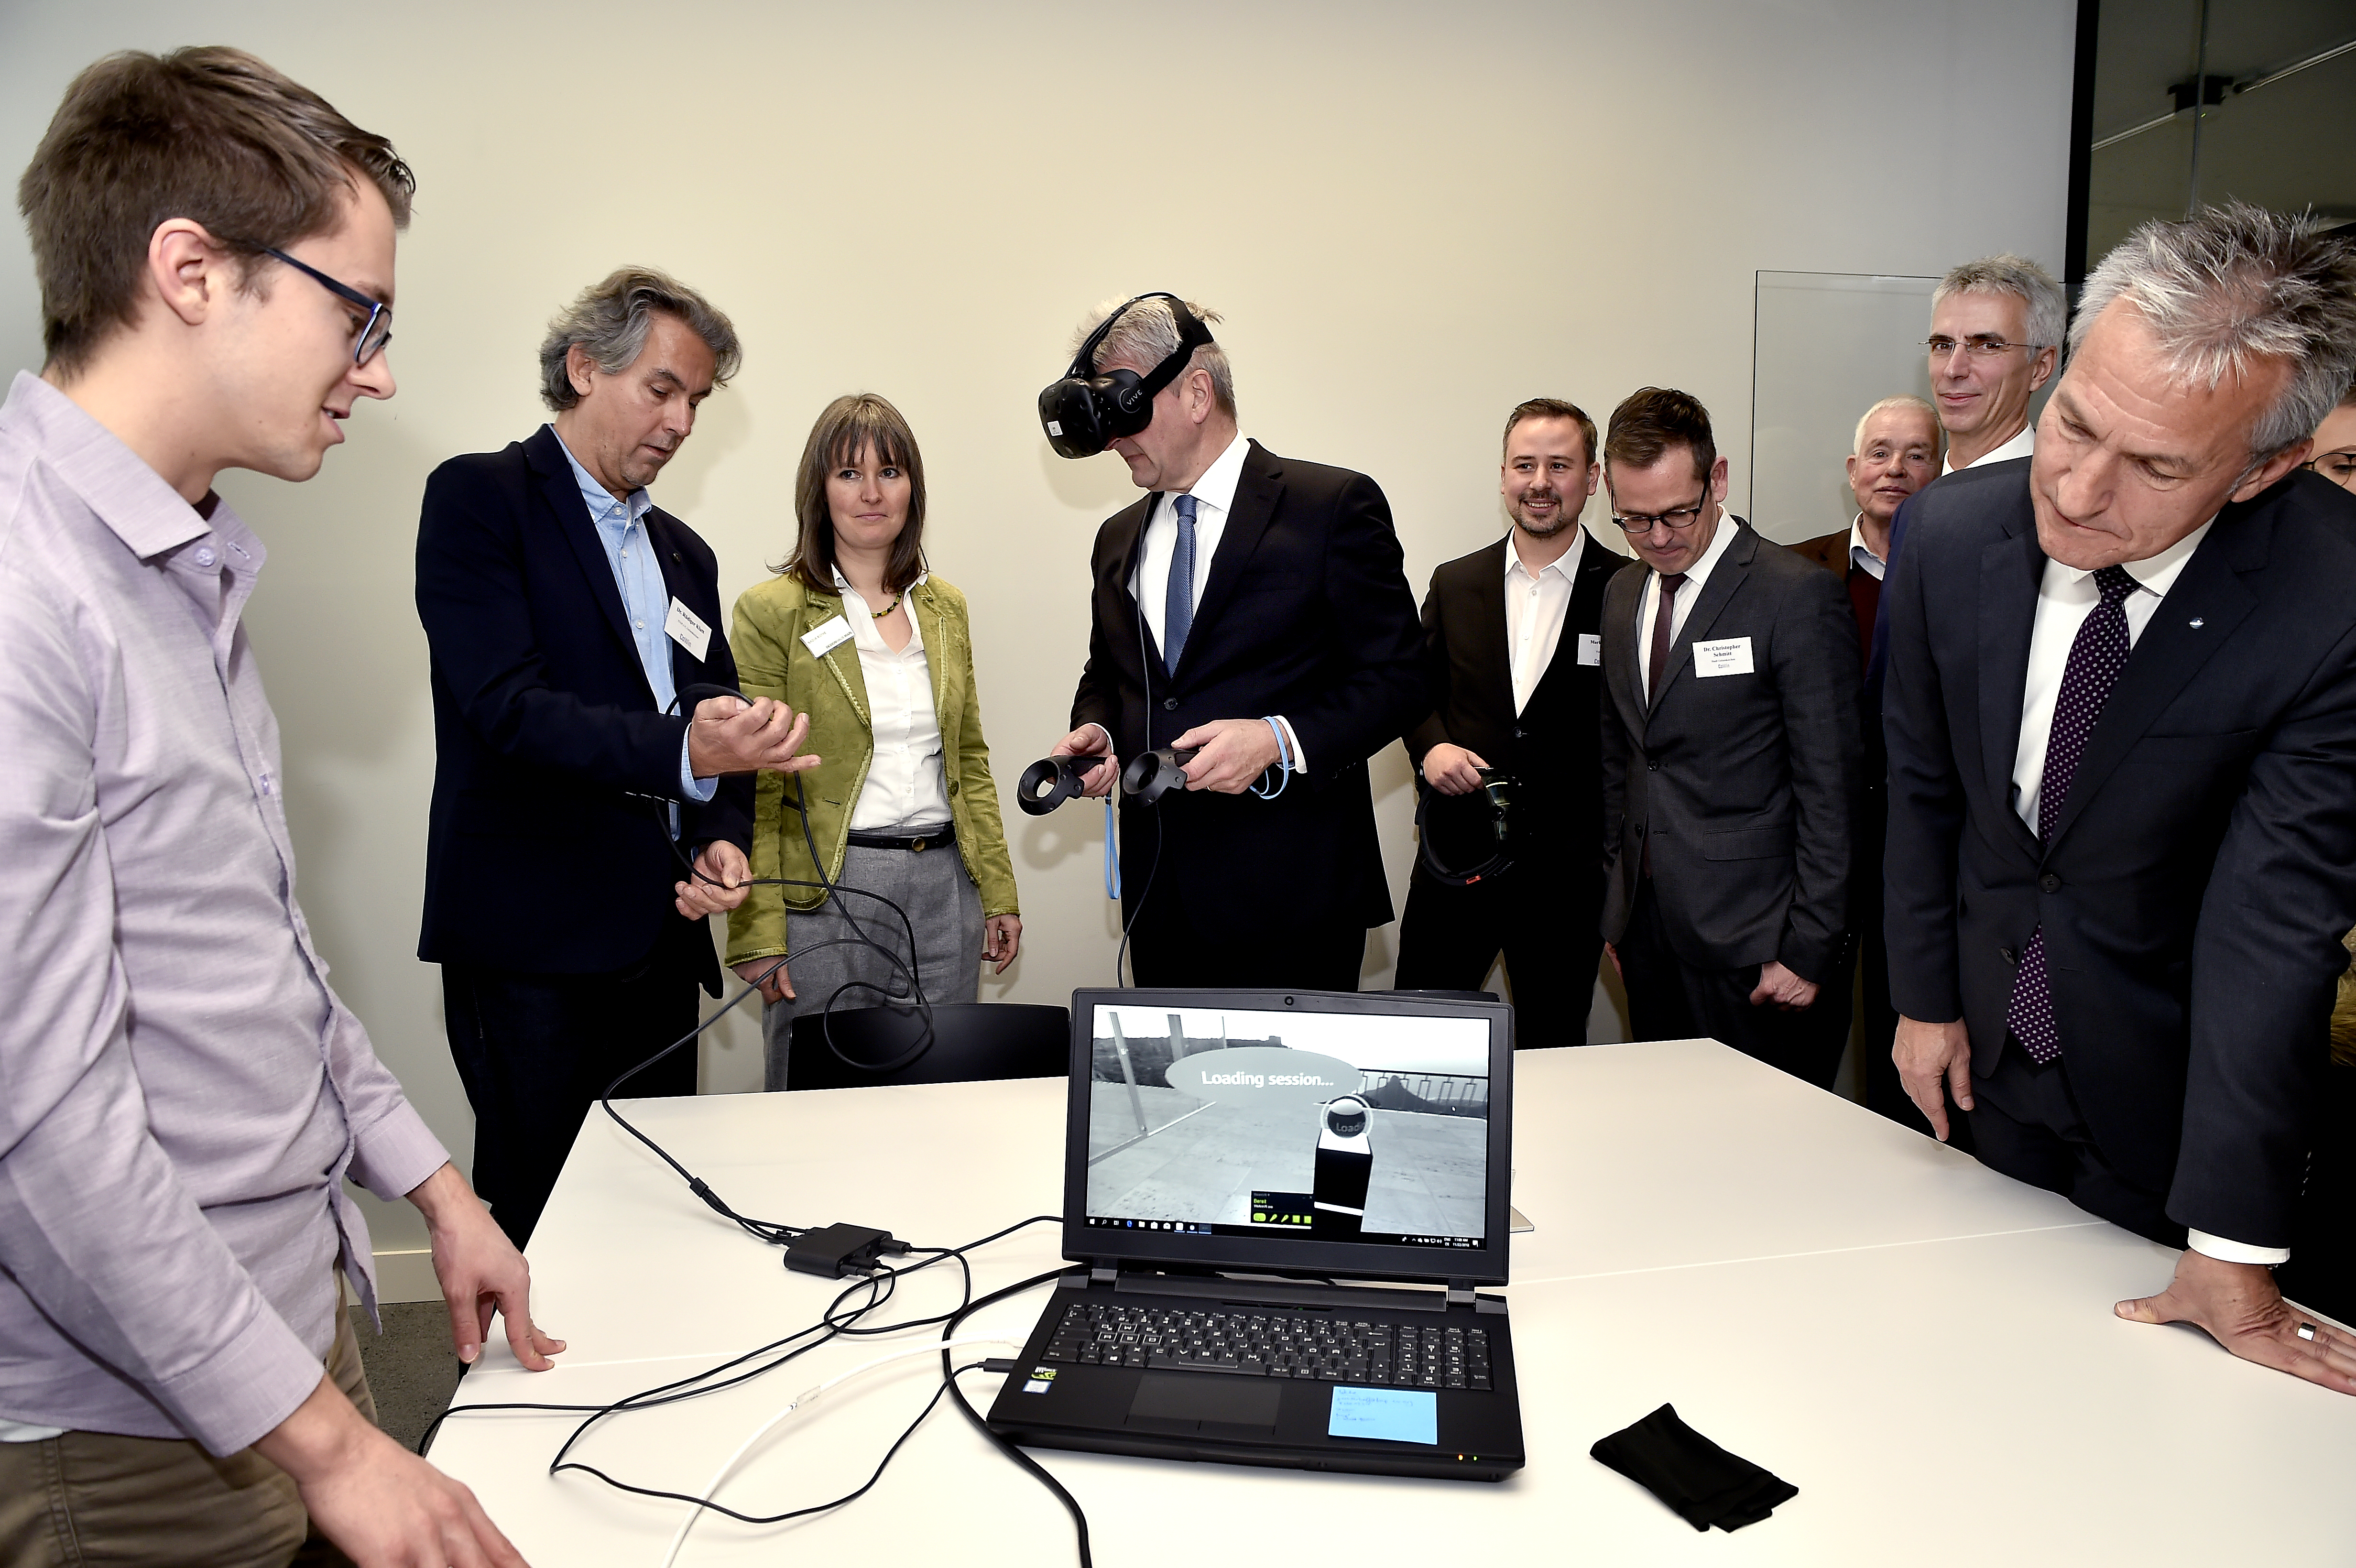 Foto: Teilmehmer der Projekt-Eröffnung CO-WIN testen Virtual Reality Brille.